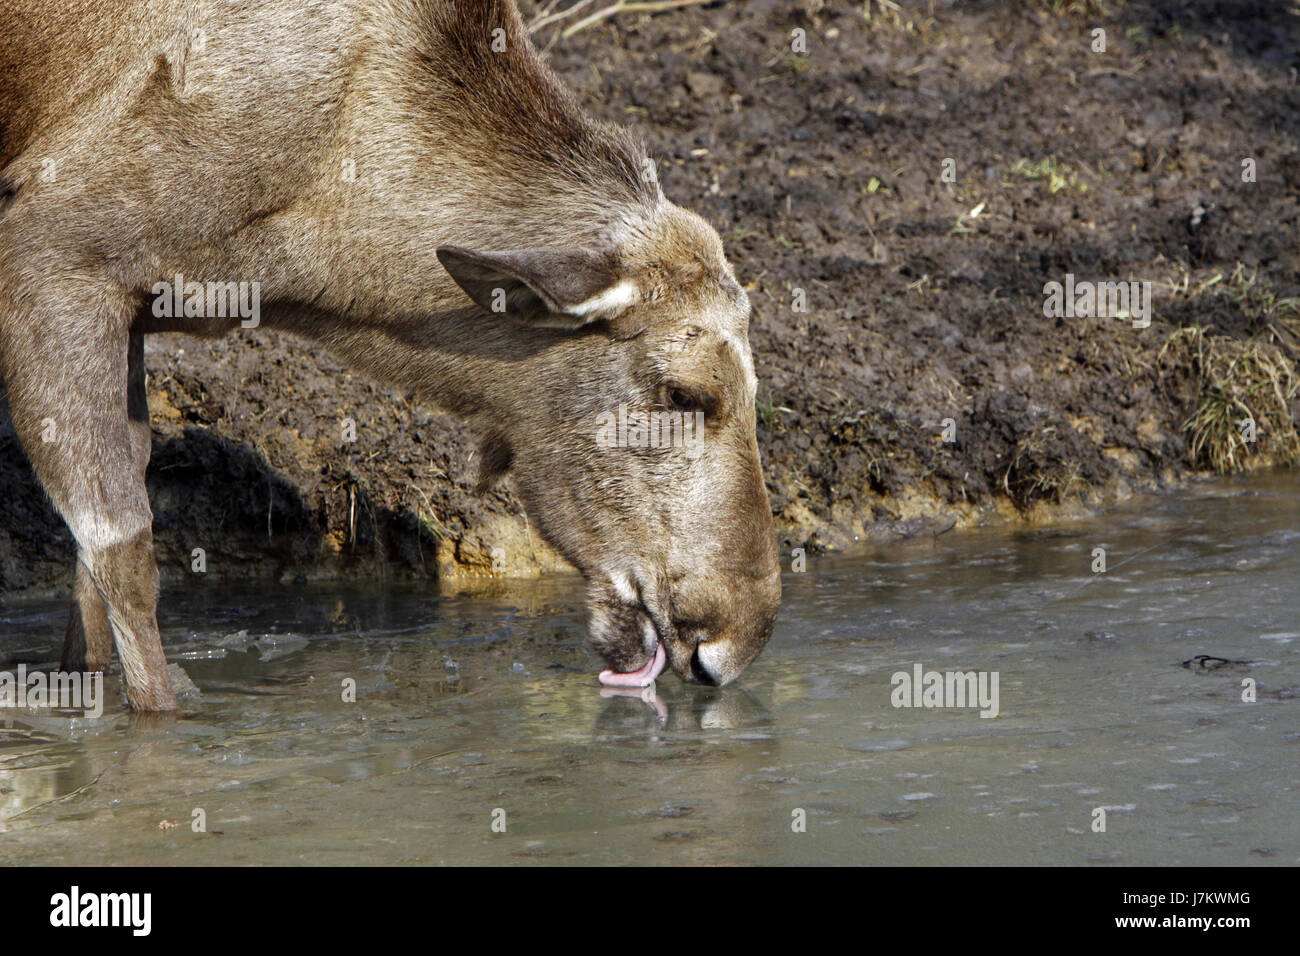 Les wapitis bull mammifère animal eaux bull Europe Asie portrait vache humide de l'eau fraîche Banque D'Images